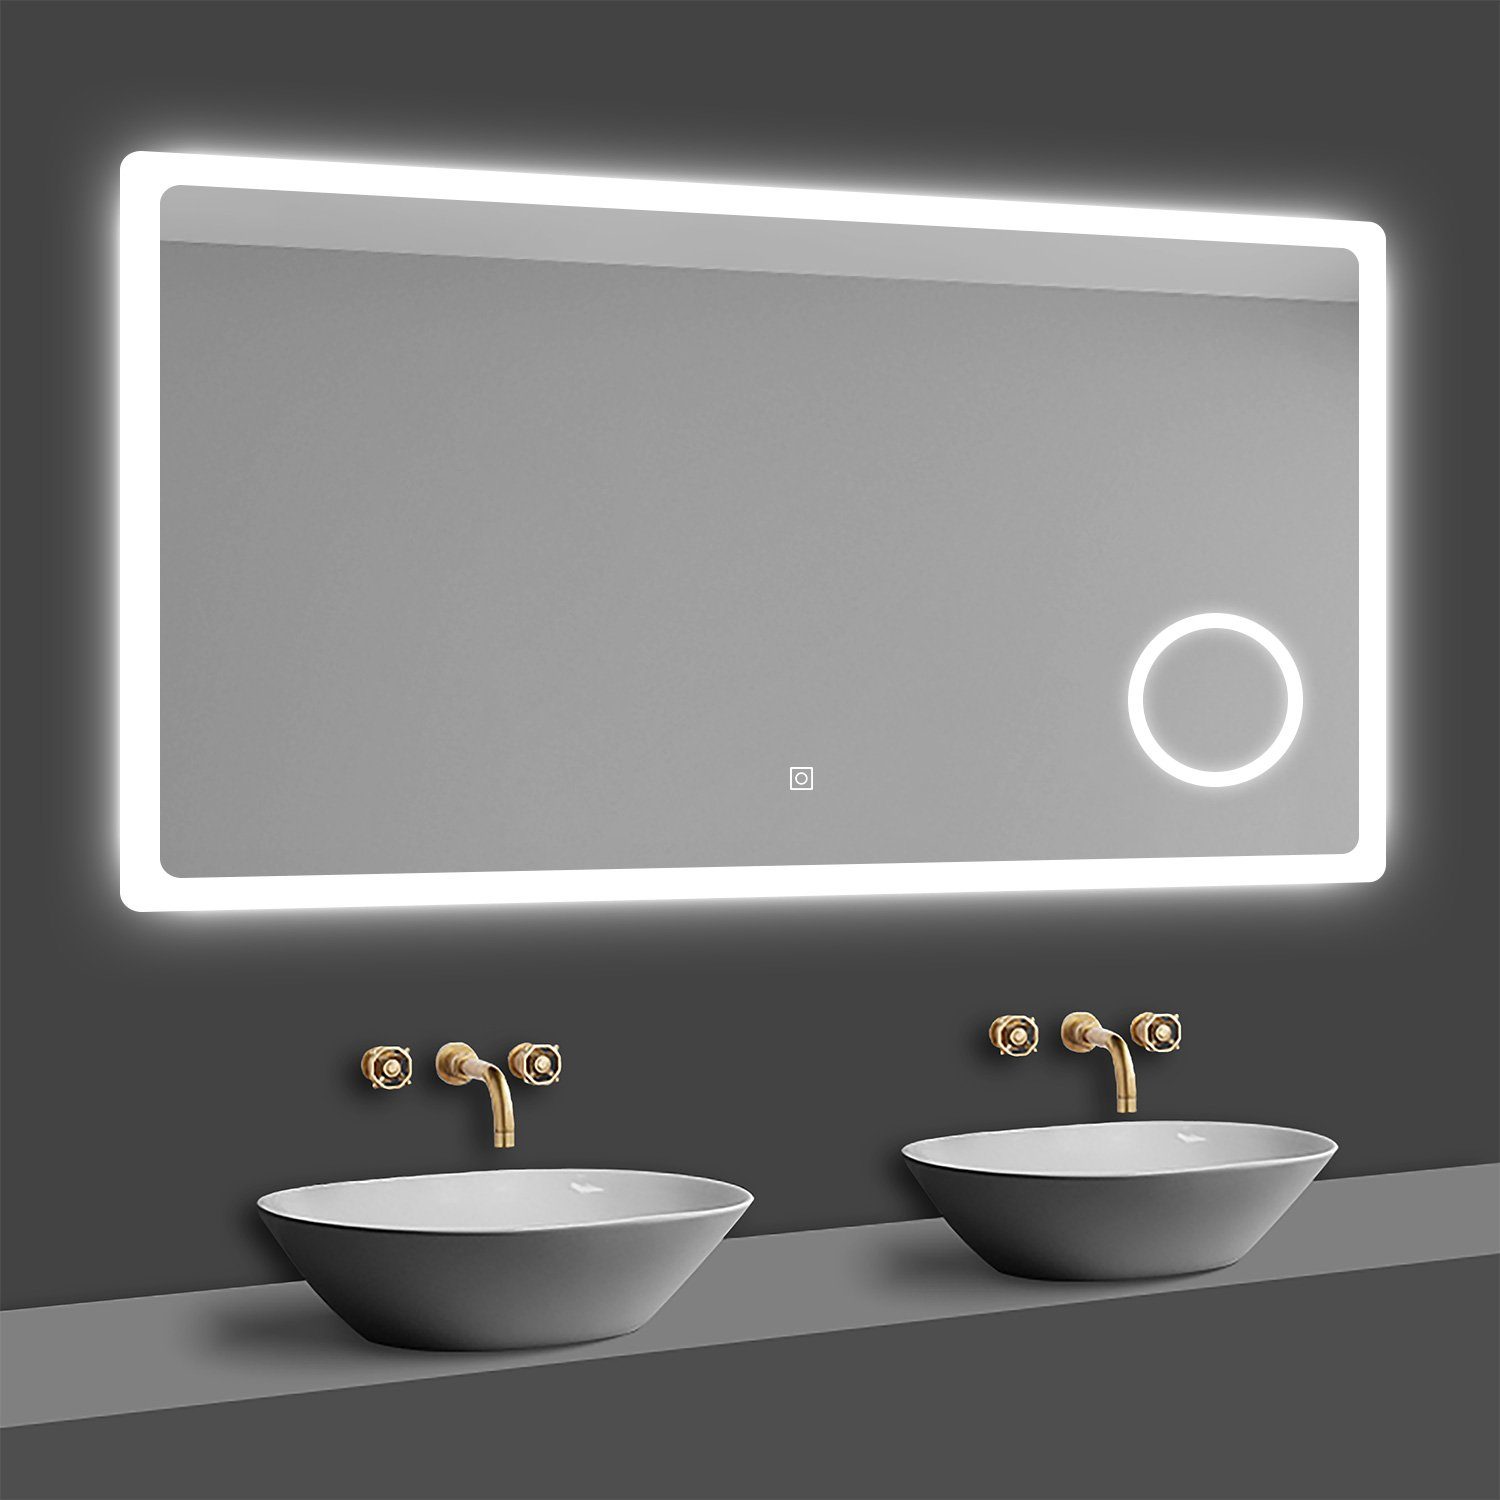 duschspa Badspiegel LED Beleuchtung Kalt/Neutral/Warmweiß Dimmbar Beschlagfrei, 3x LED Schminkspiegel, Touch, Wandschalter